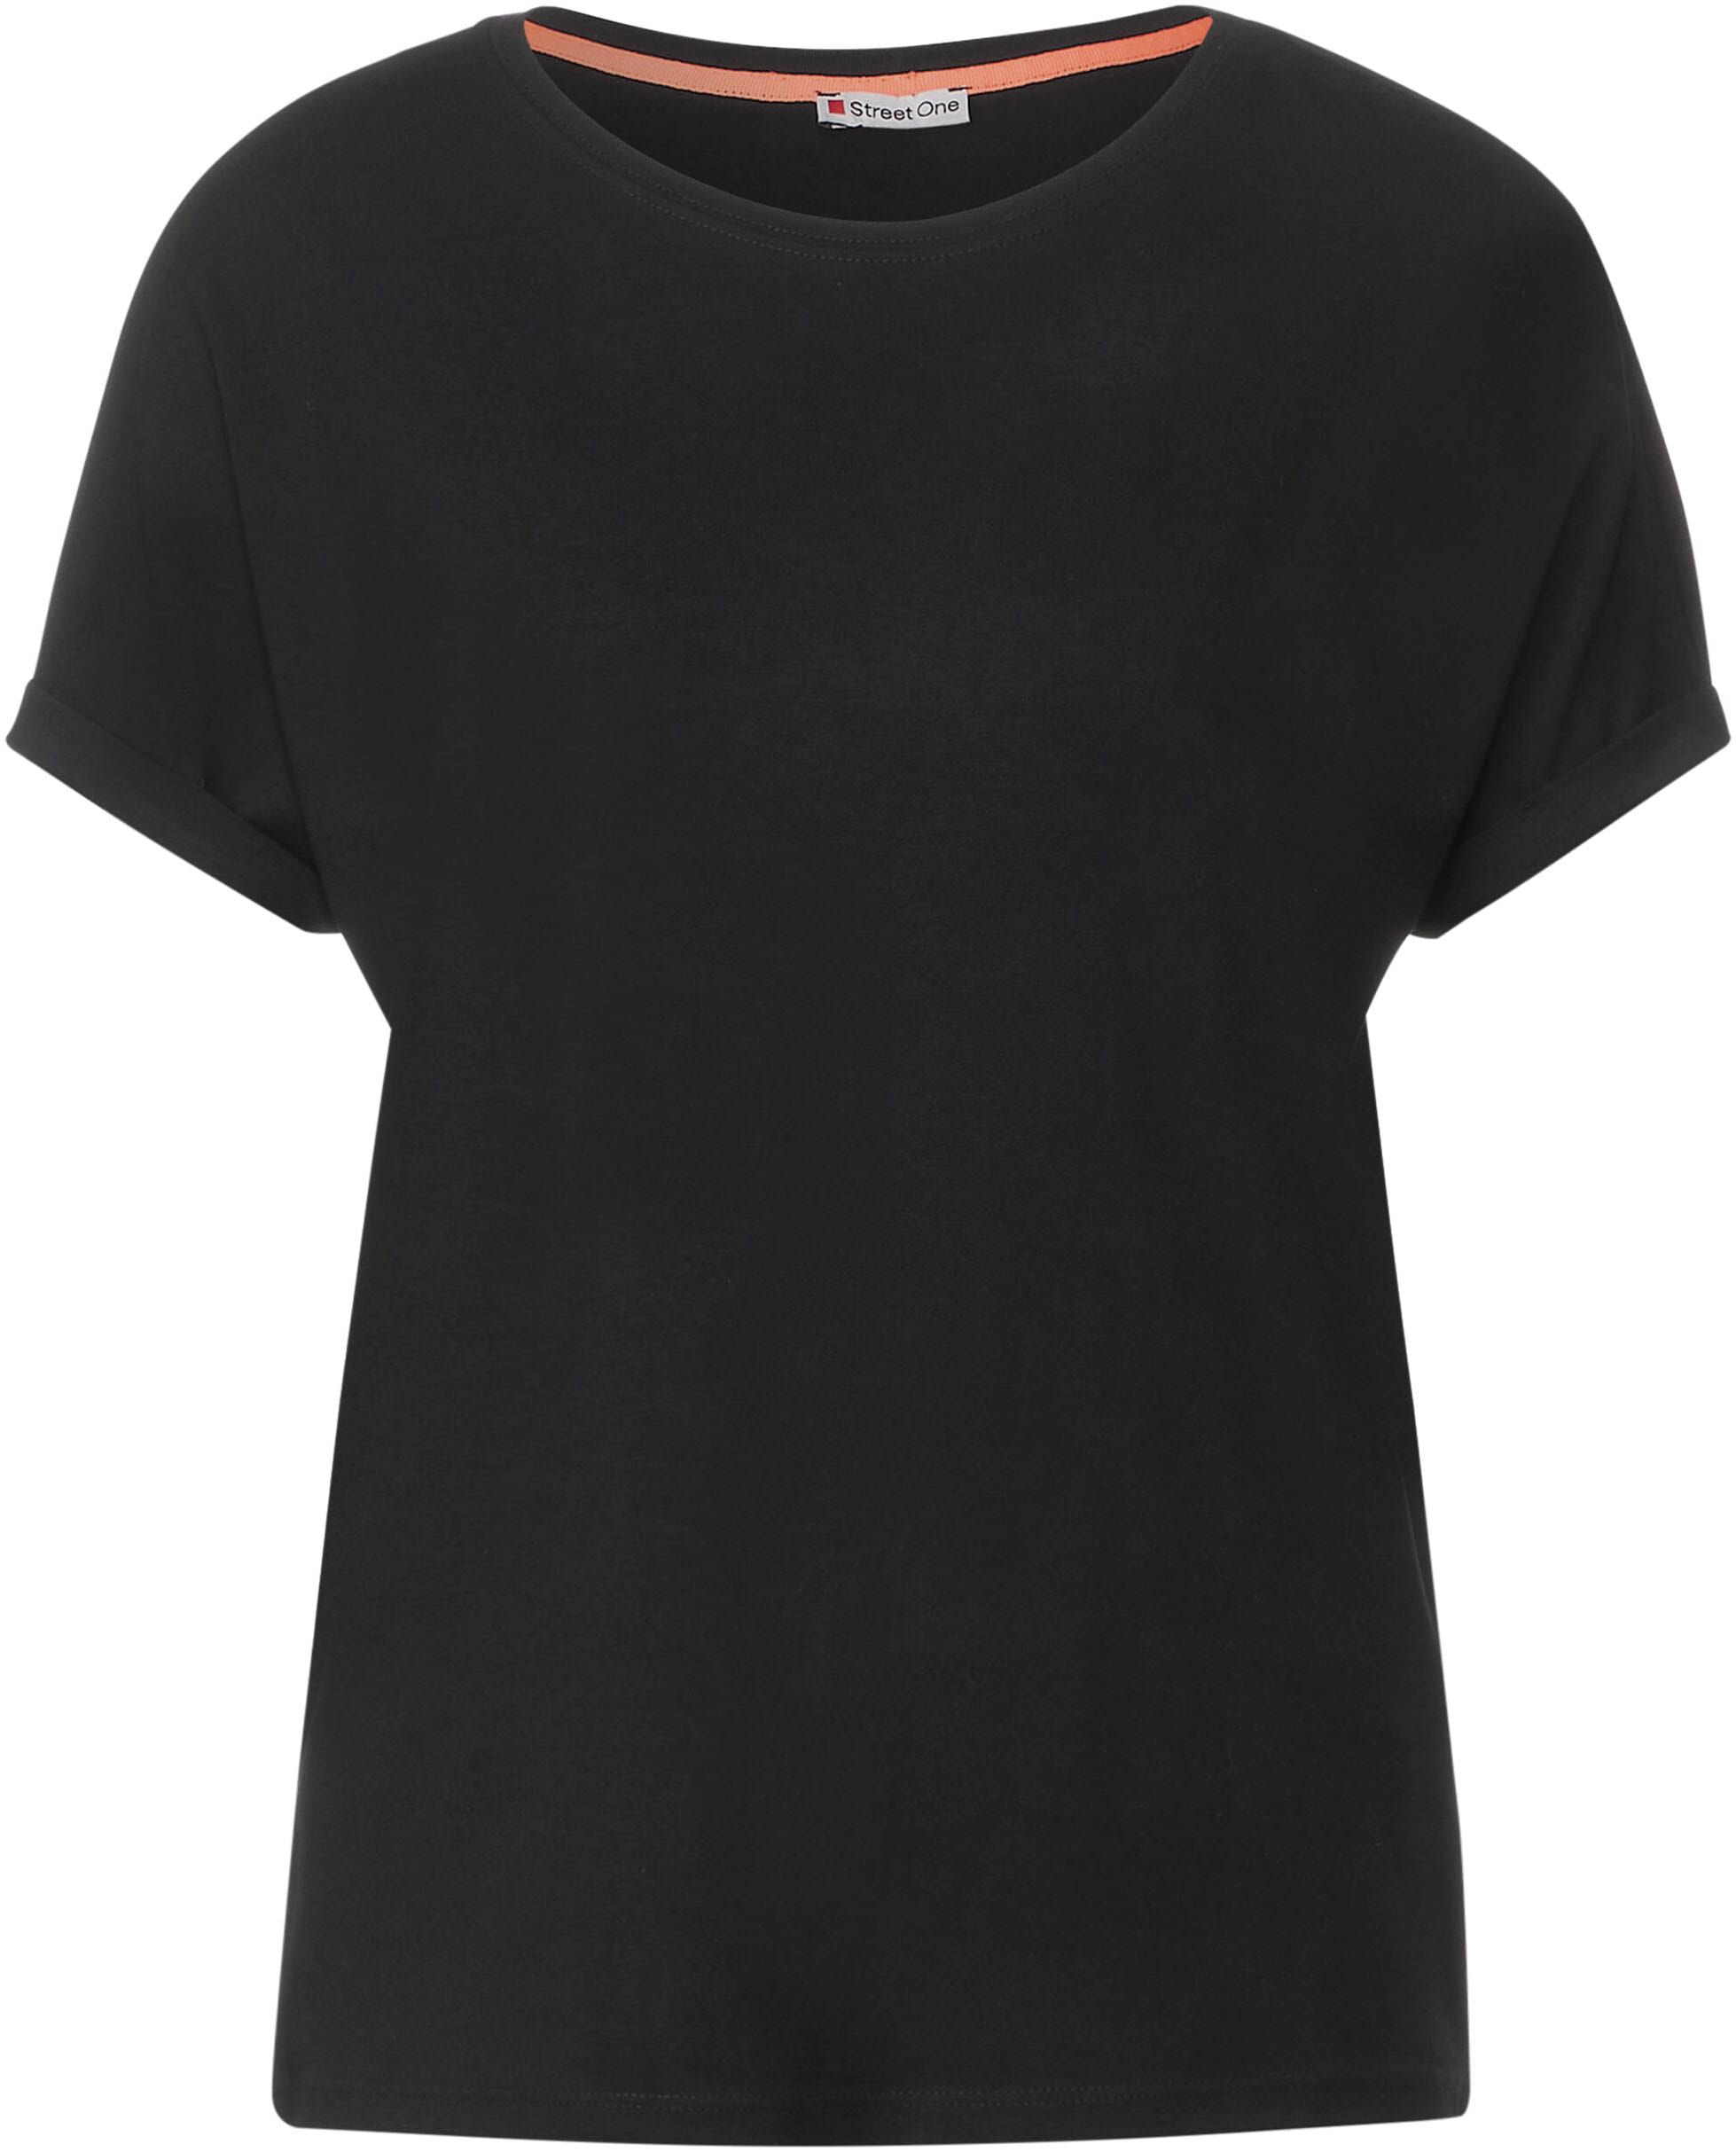 Jelmoli-Versand T-Shirt, STREET Style bei Schweiz online kaufen Crista im ONE